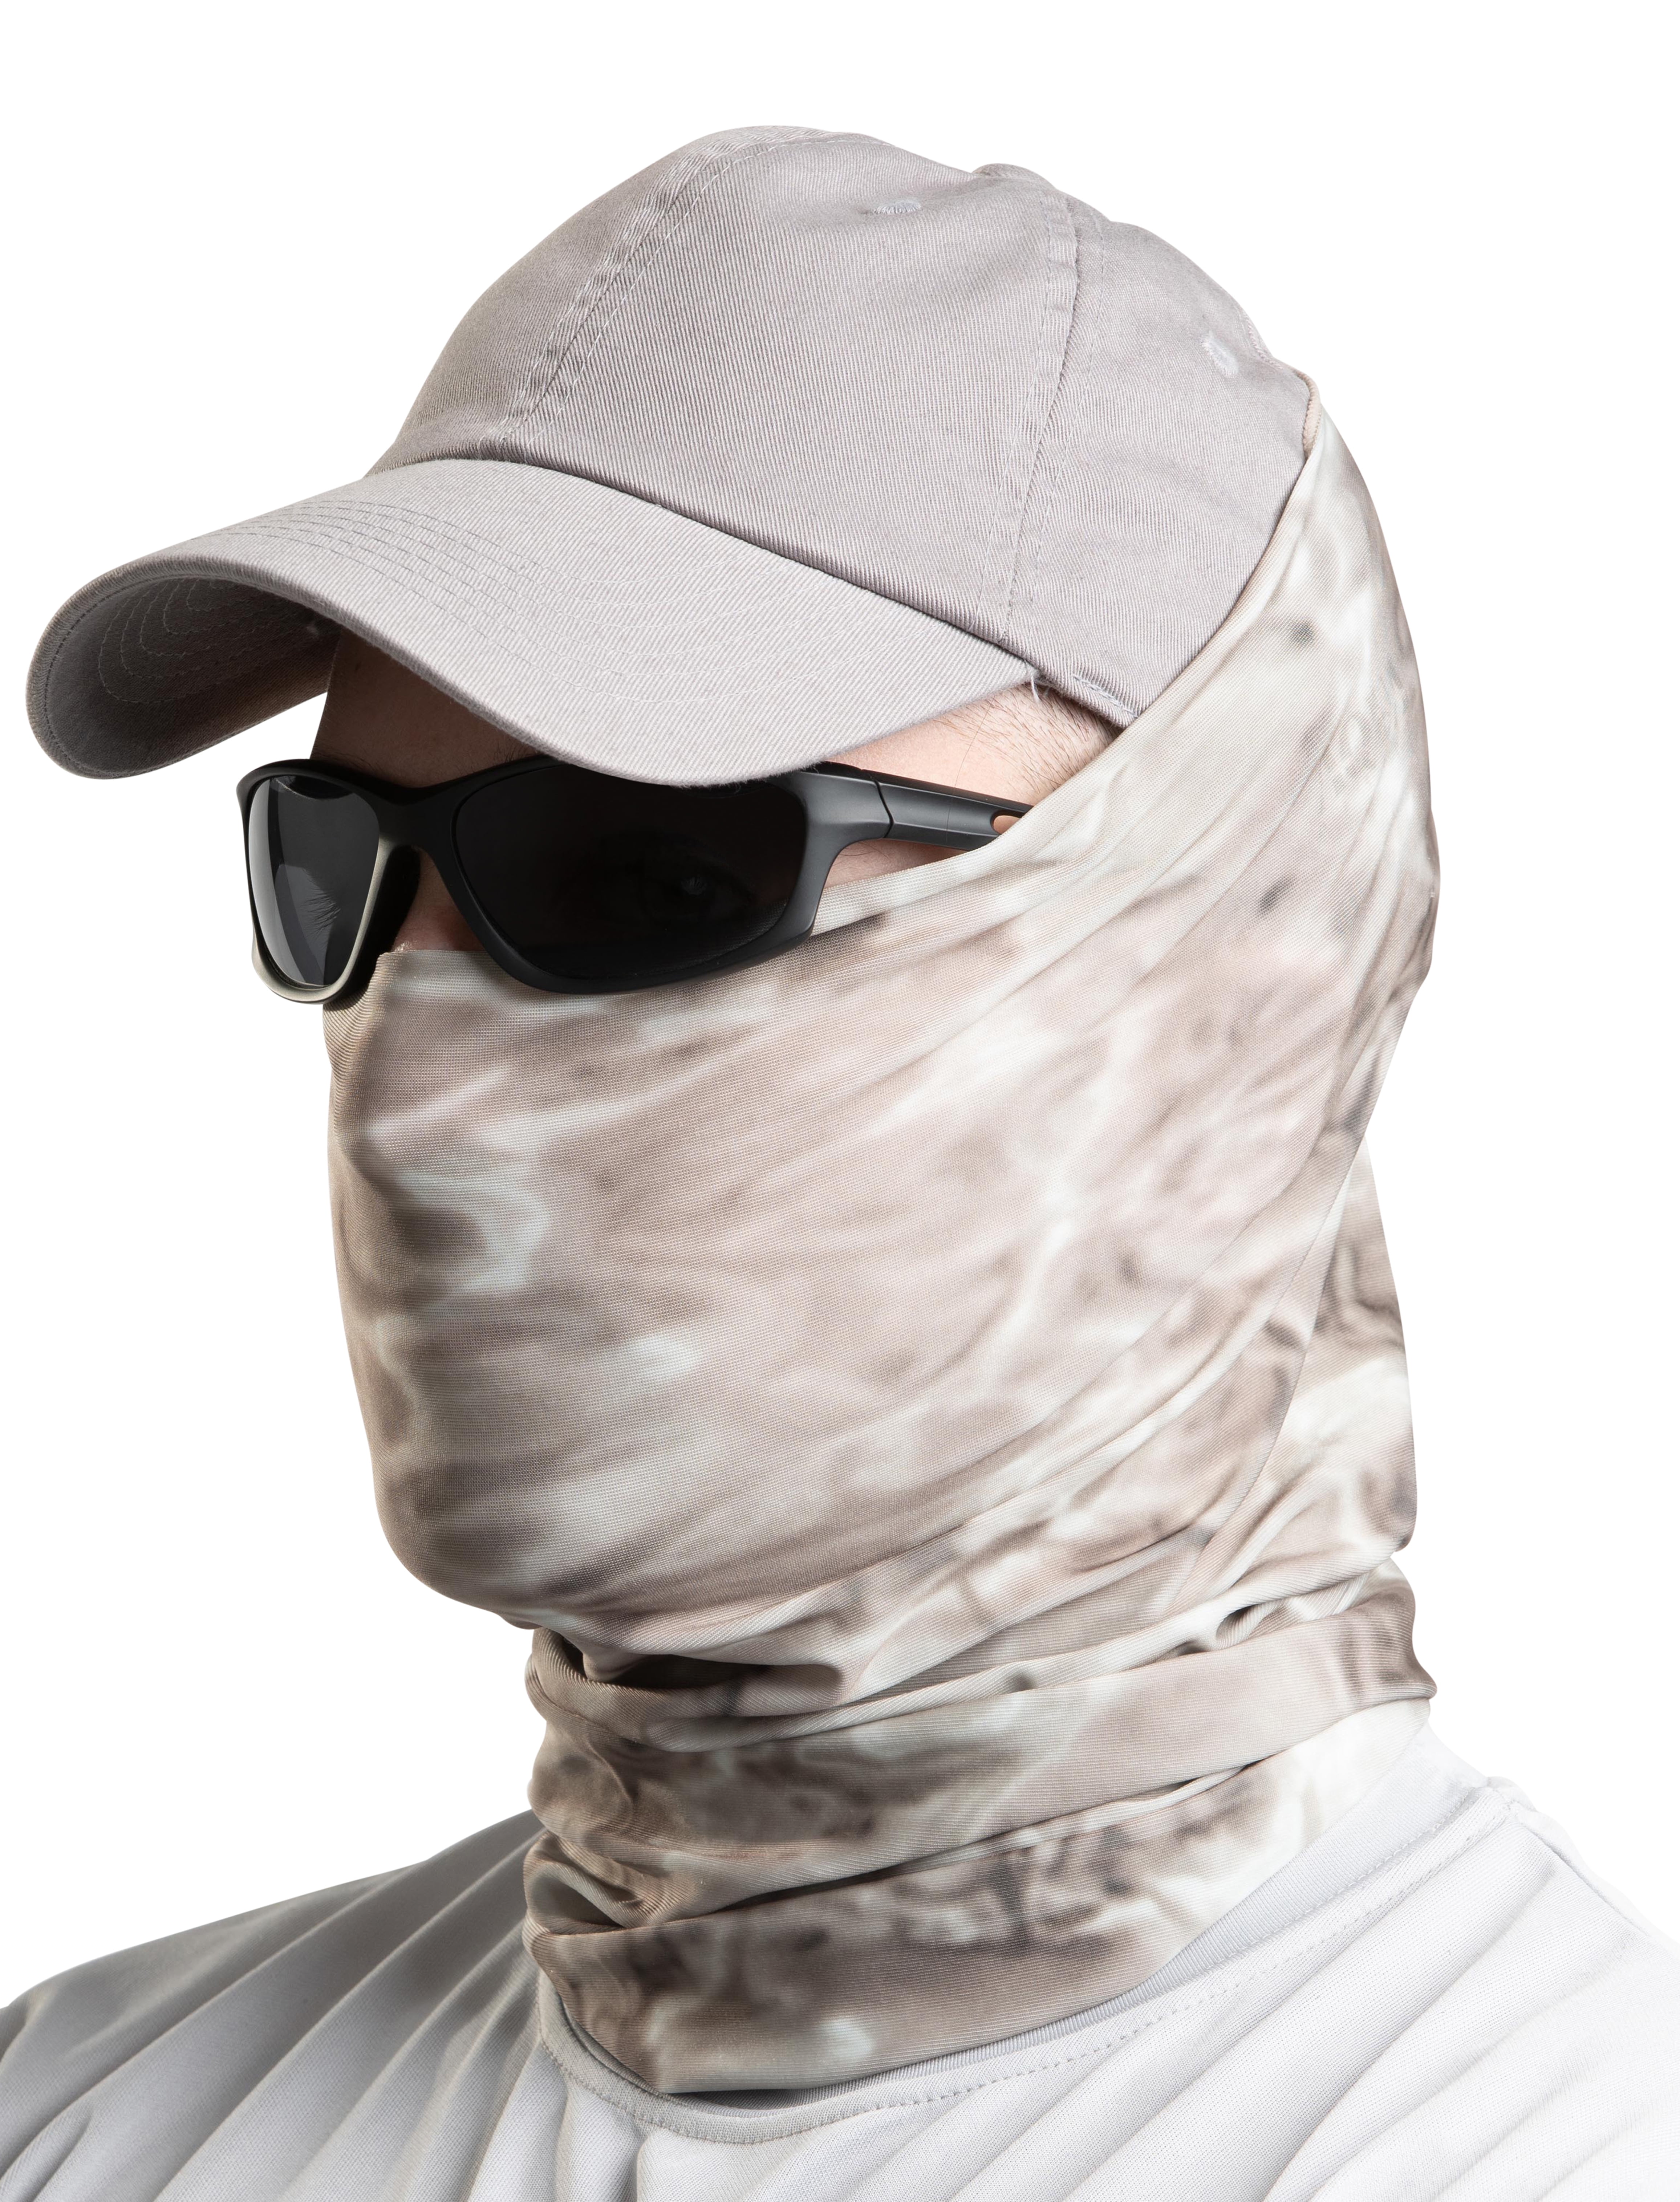 Hunting Face Cover Balaclava Neck Tube Gaiter Motorcycle Shield Bandana Headband 